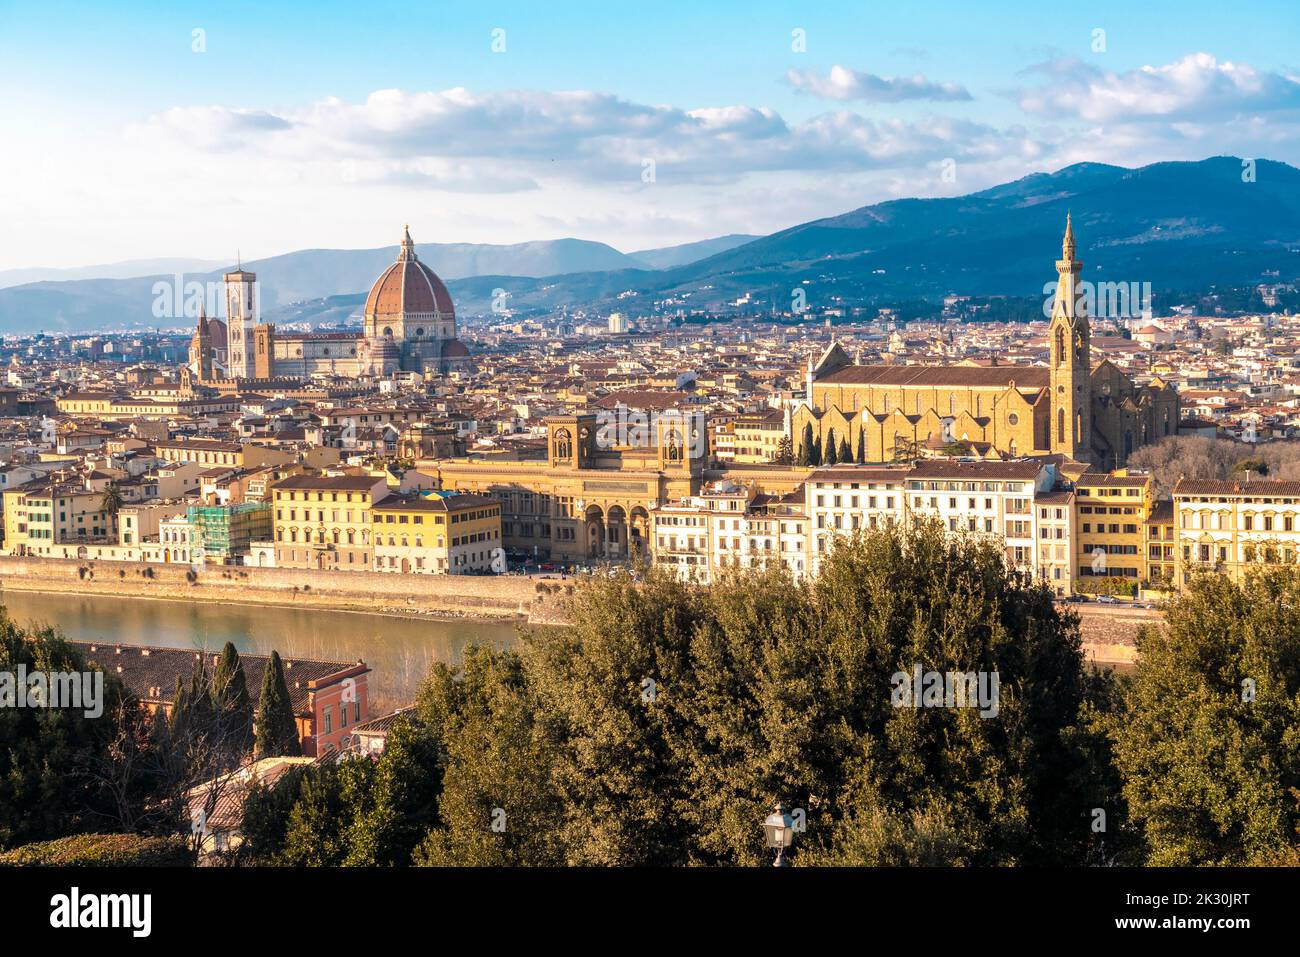 Italien, die Toskana, Florenz, die Kathedrale von Florenz, die Basilika des Heiligen Kreuzes und die umliegenden Gebäude Stockfoto